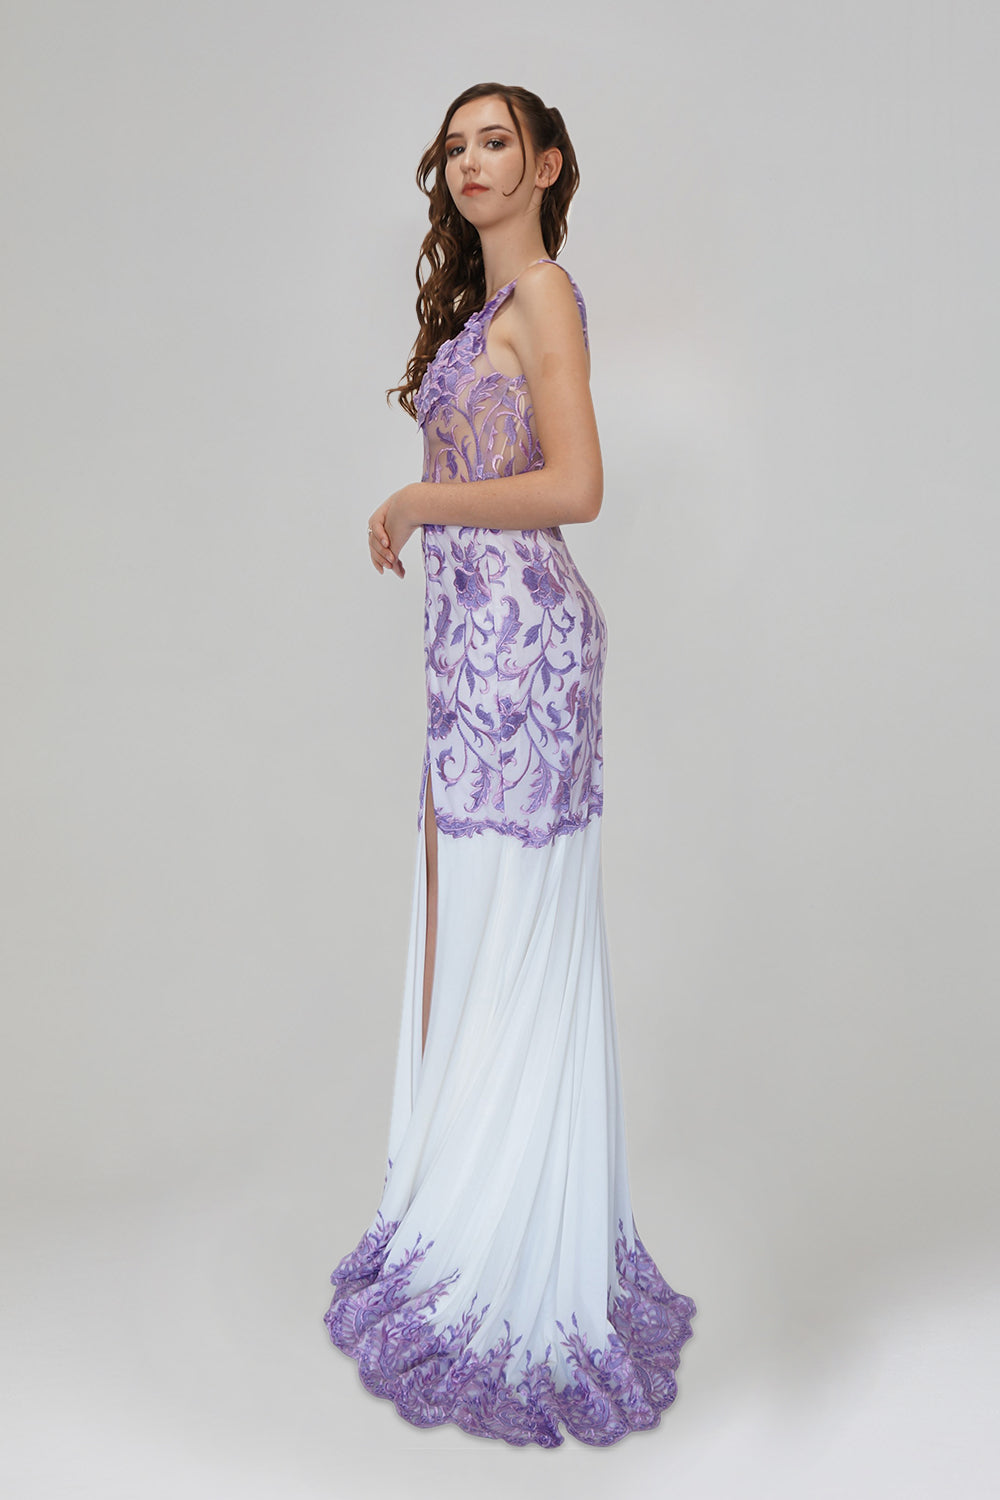 custom lilac white bridesmaid dresses australia online envious bridal & formal